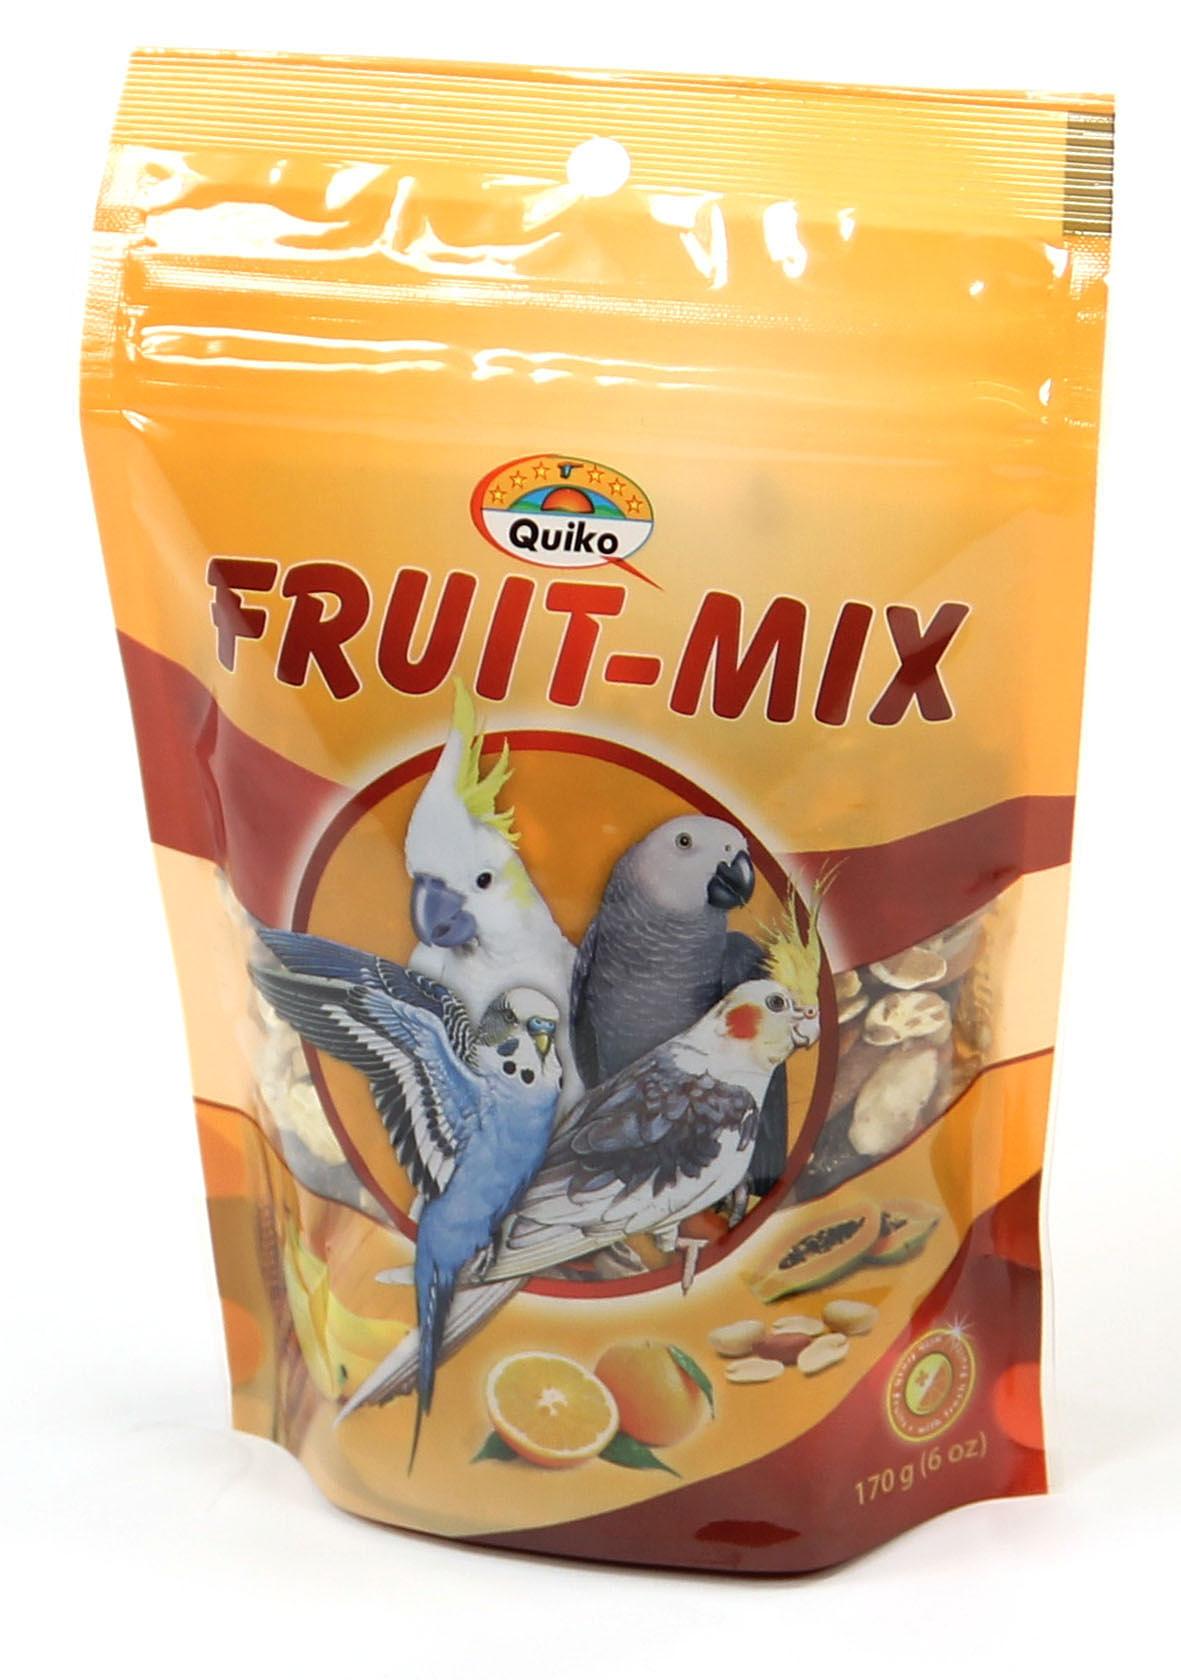 Quiko Fruit-Mix